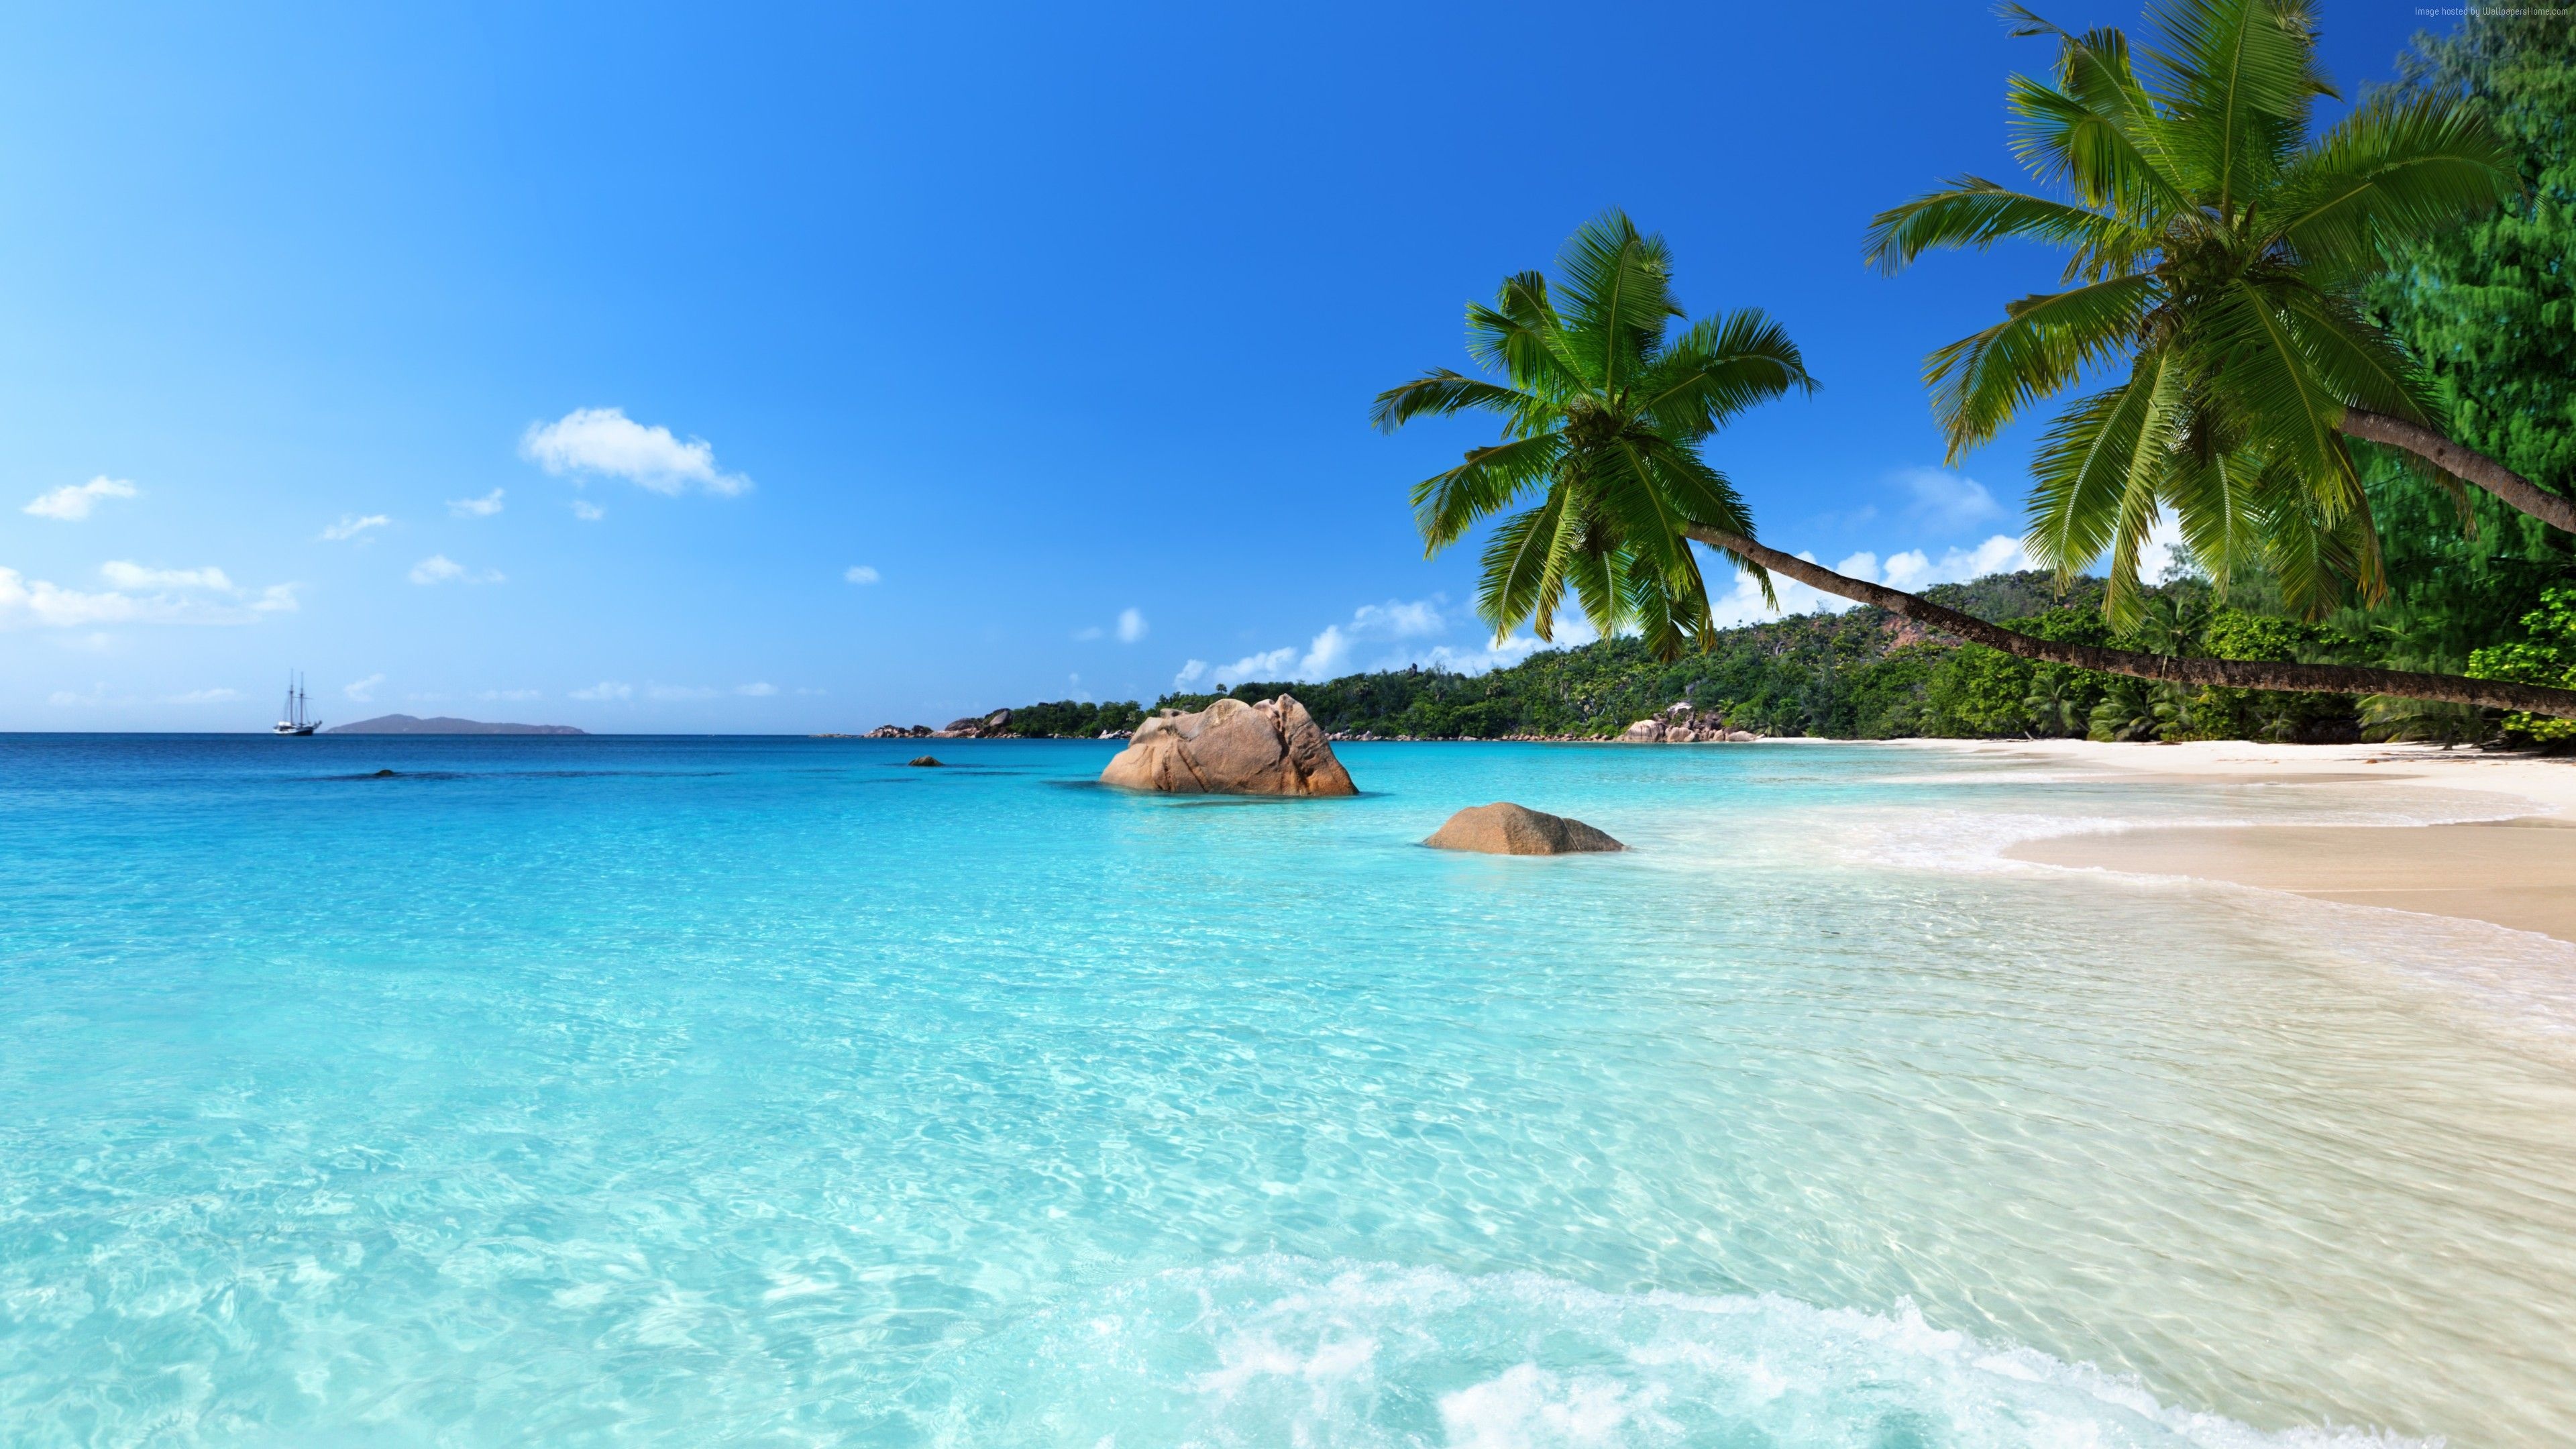 Seychelles beach wallpapers, Beach backgrounds, 3840x2160 4K Desktop